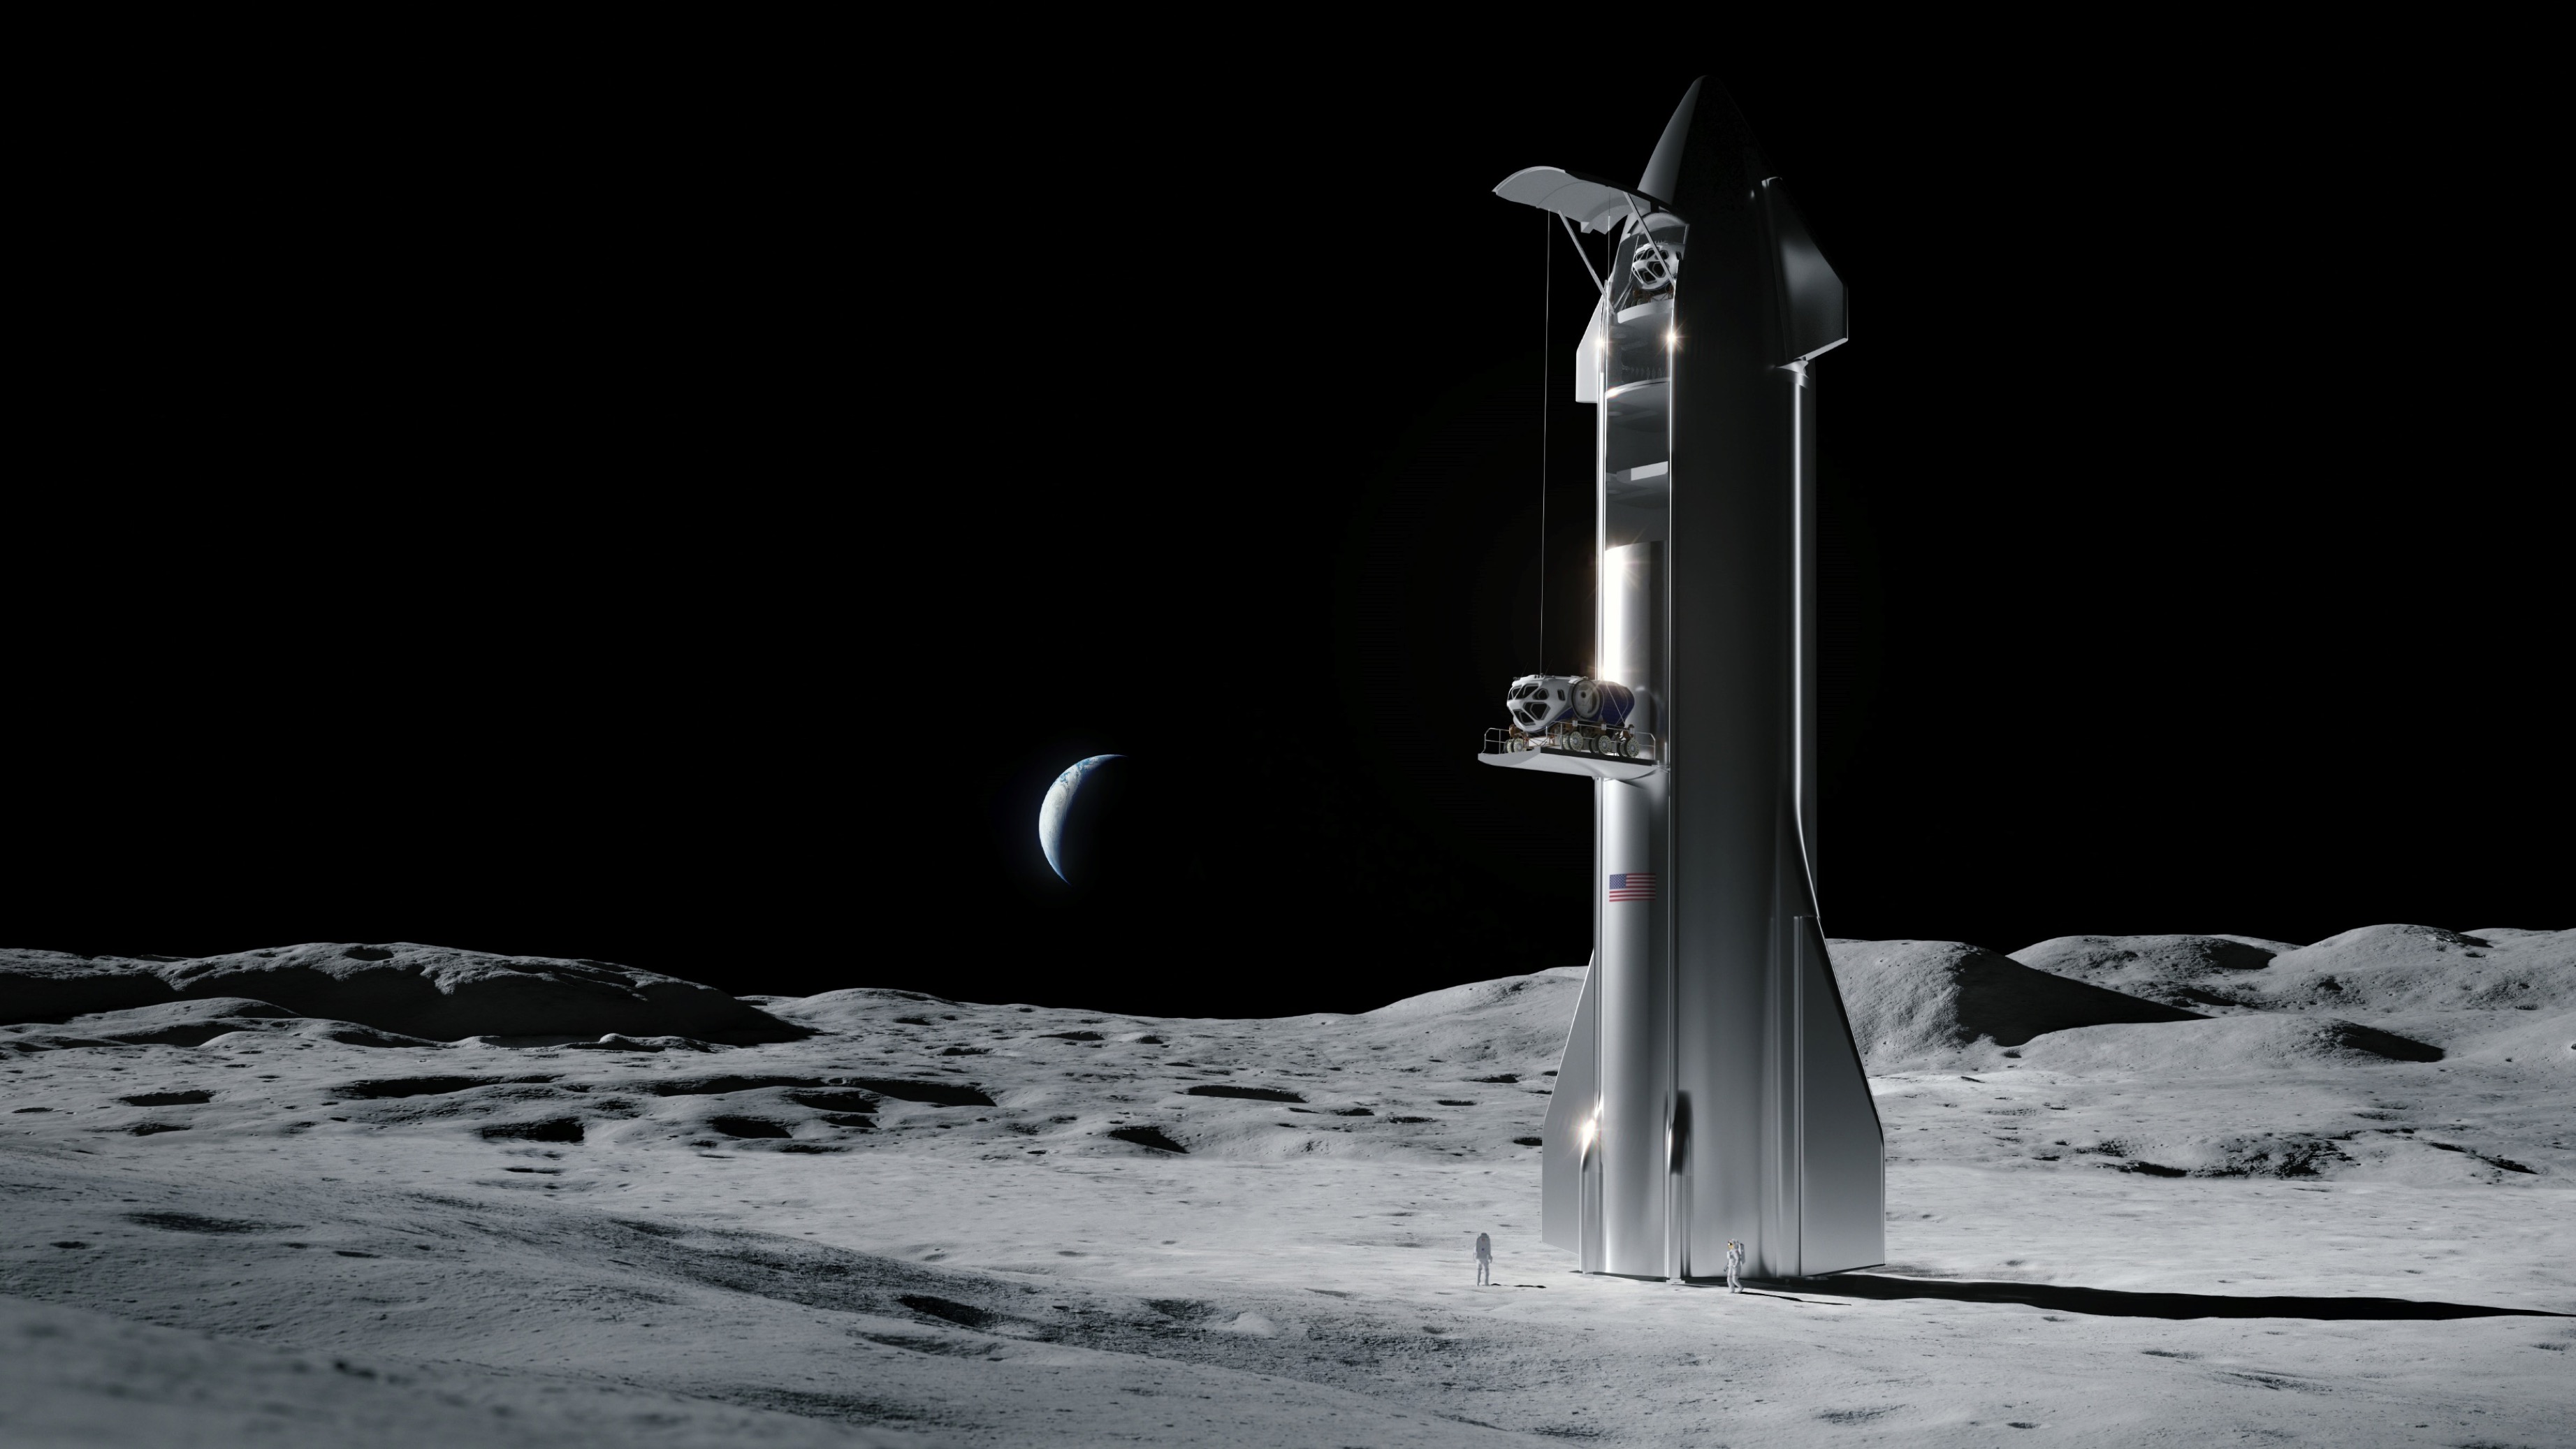 Artystyczna ilustracja statku kosmicznego SpaceX na Księżycu.